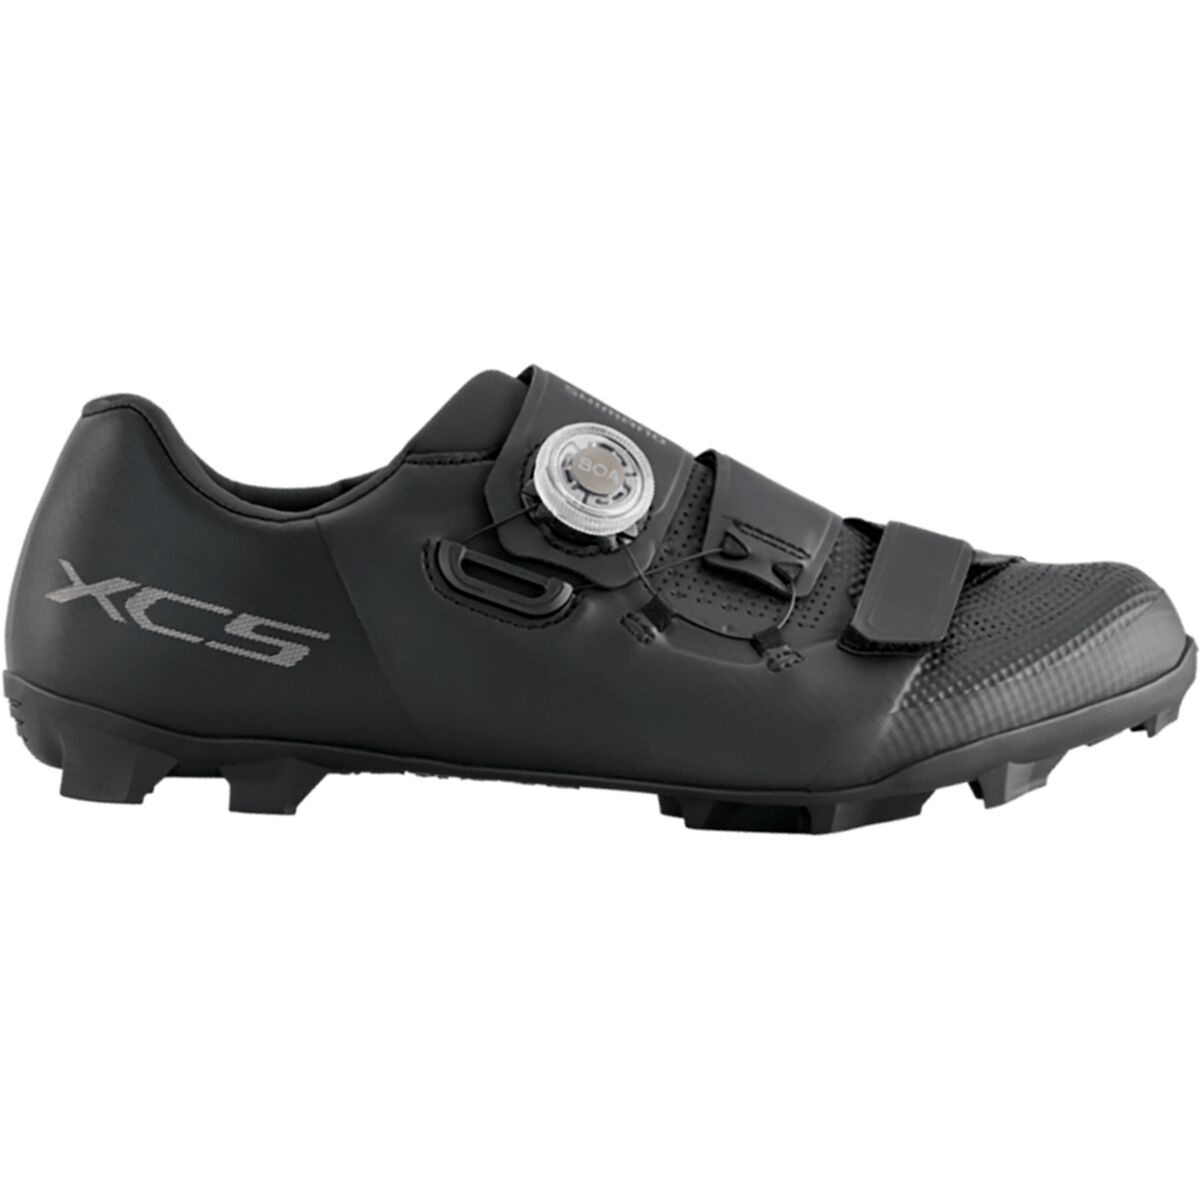 Shimano XC502 Wide Cycling Shoe - Men's Black, 41.0